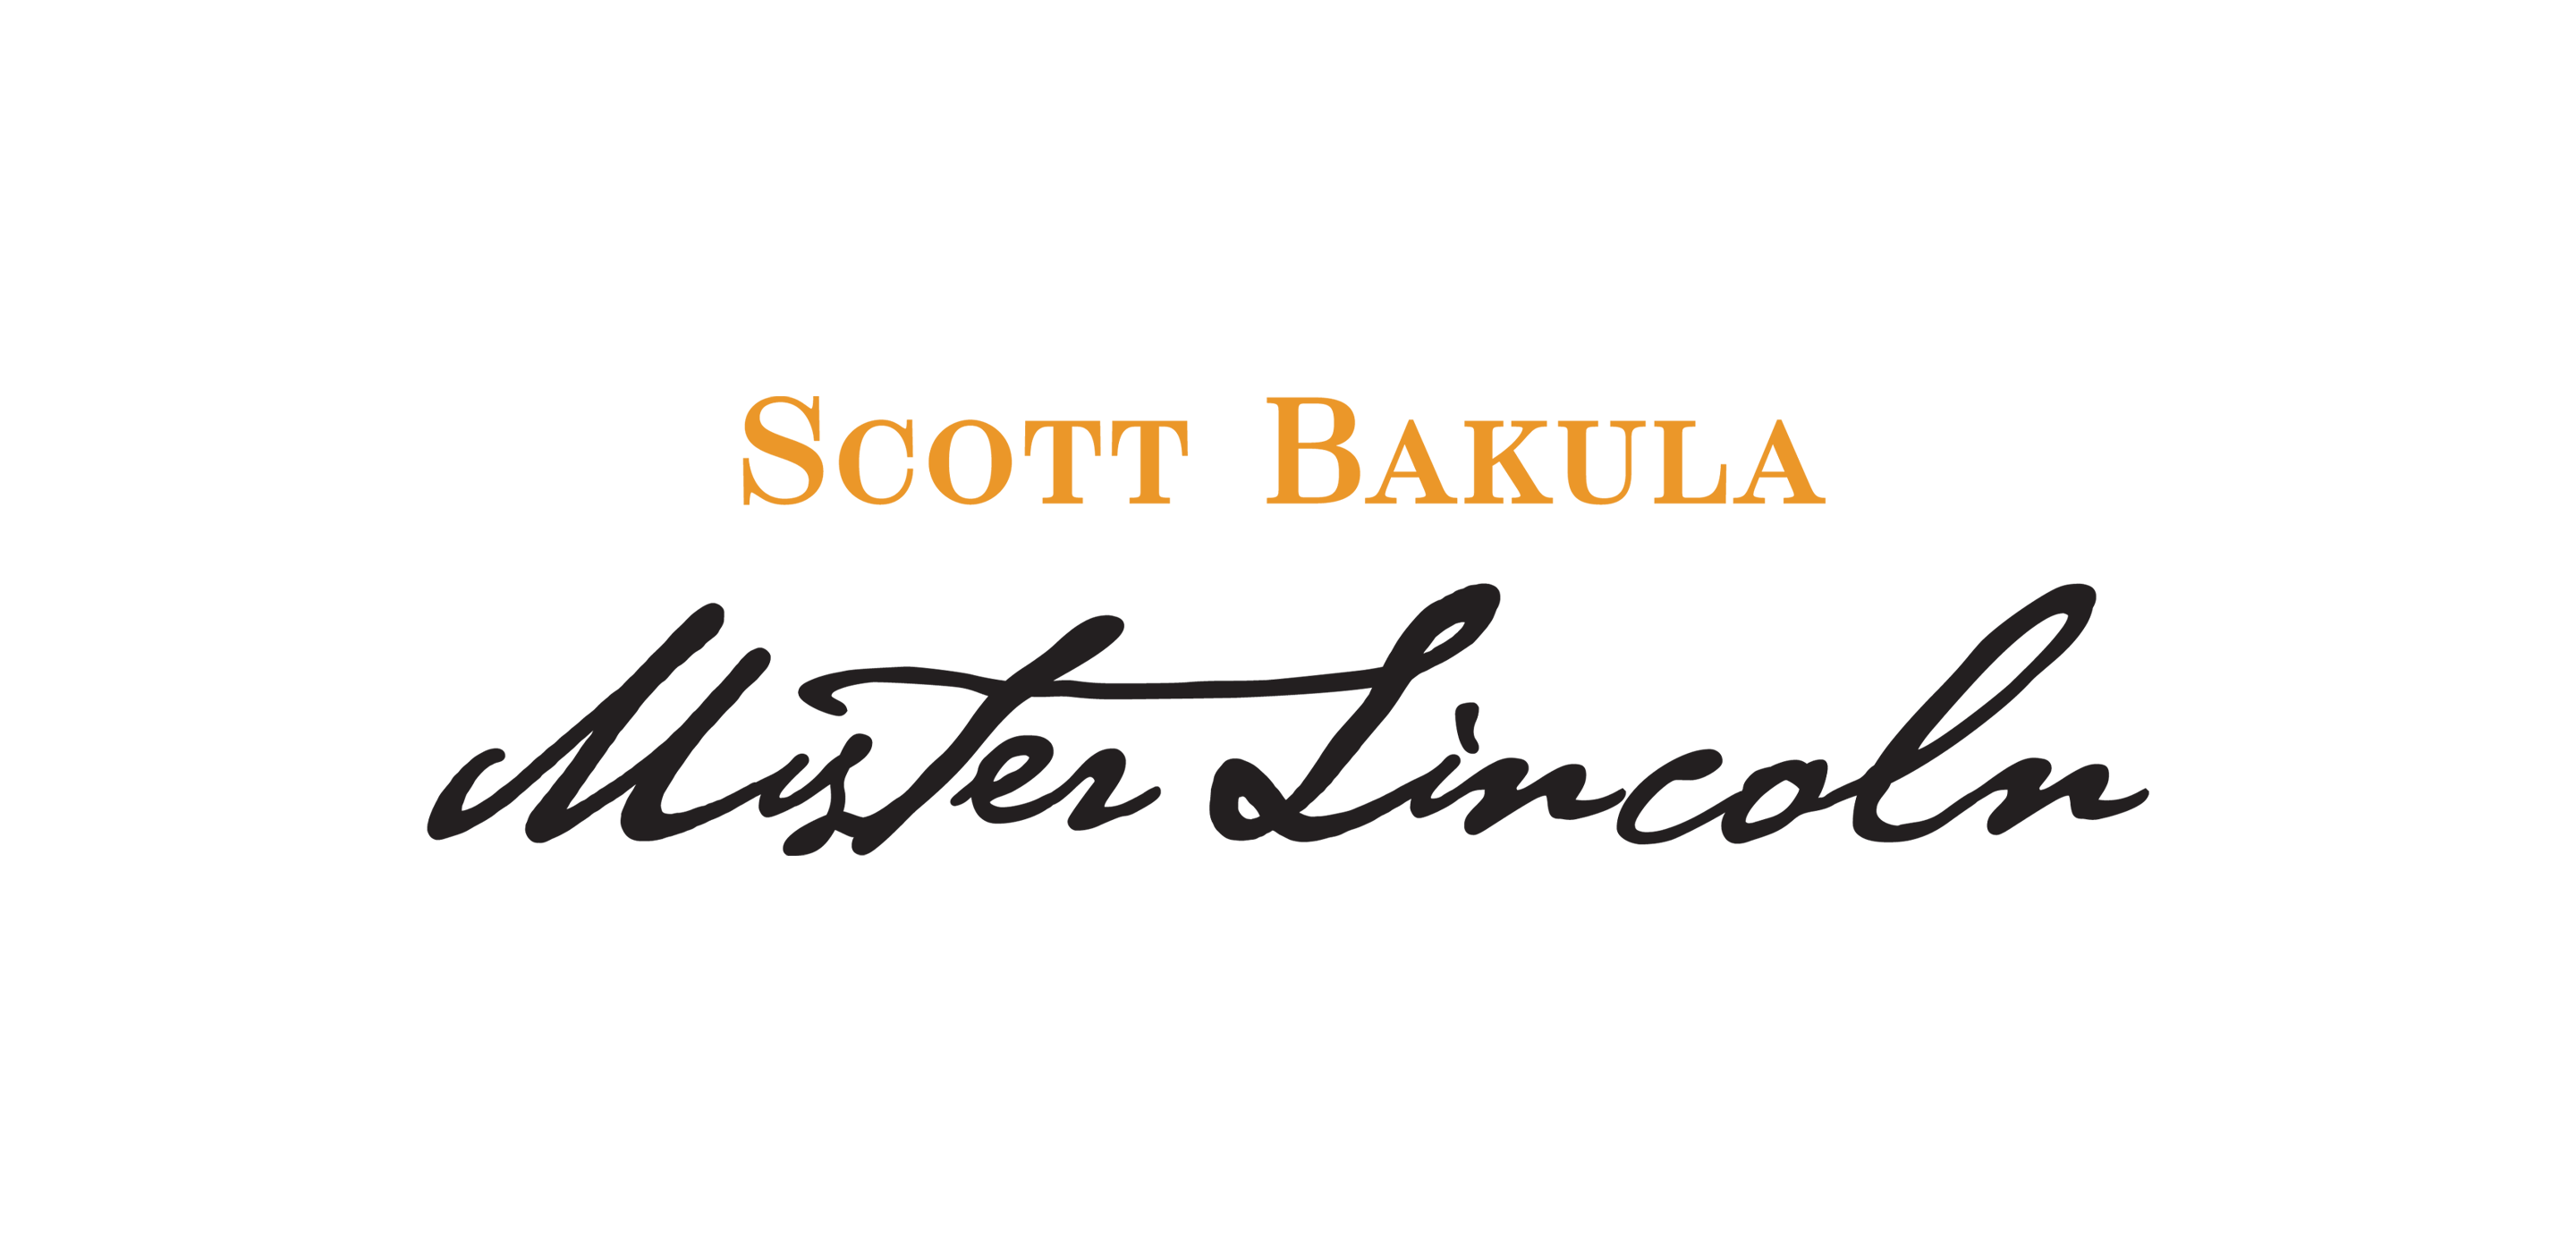 Logo reading "Scott Bakula Mister Lincoln."